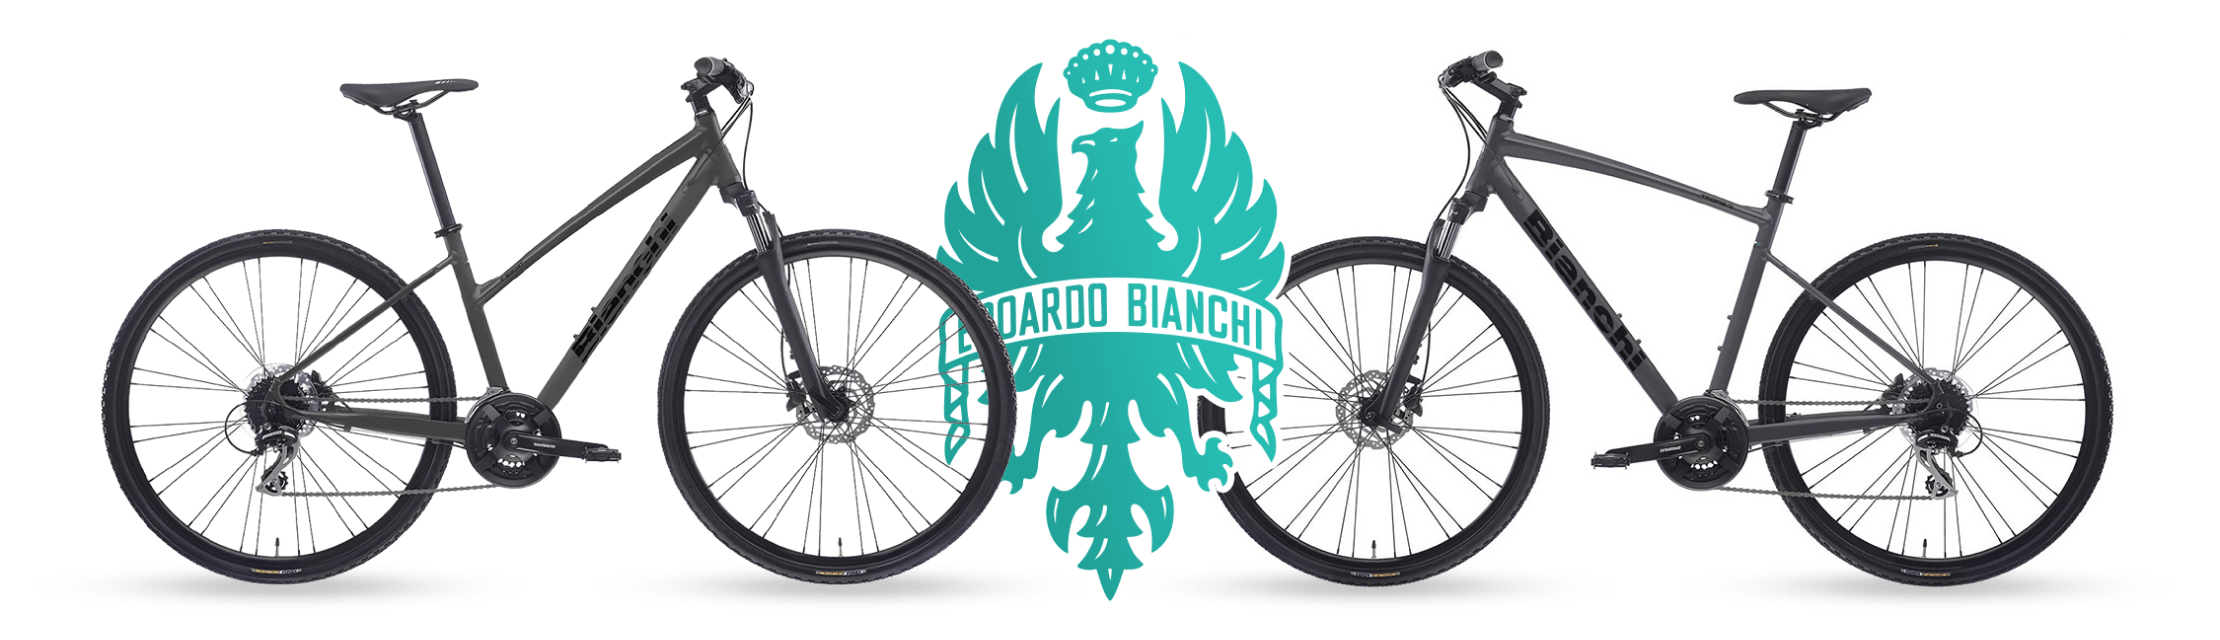 Bianchi kerékpár főnyeremény